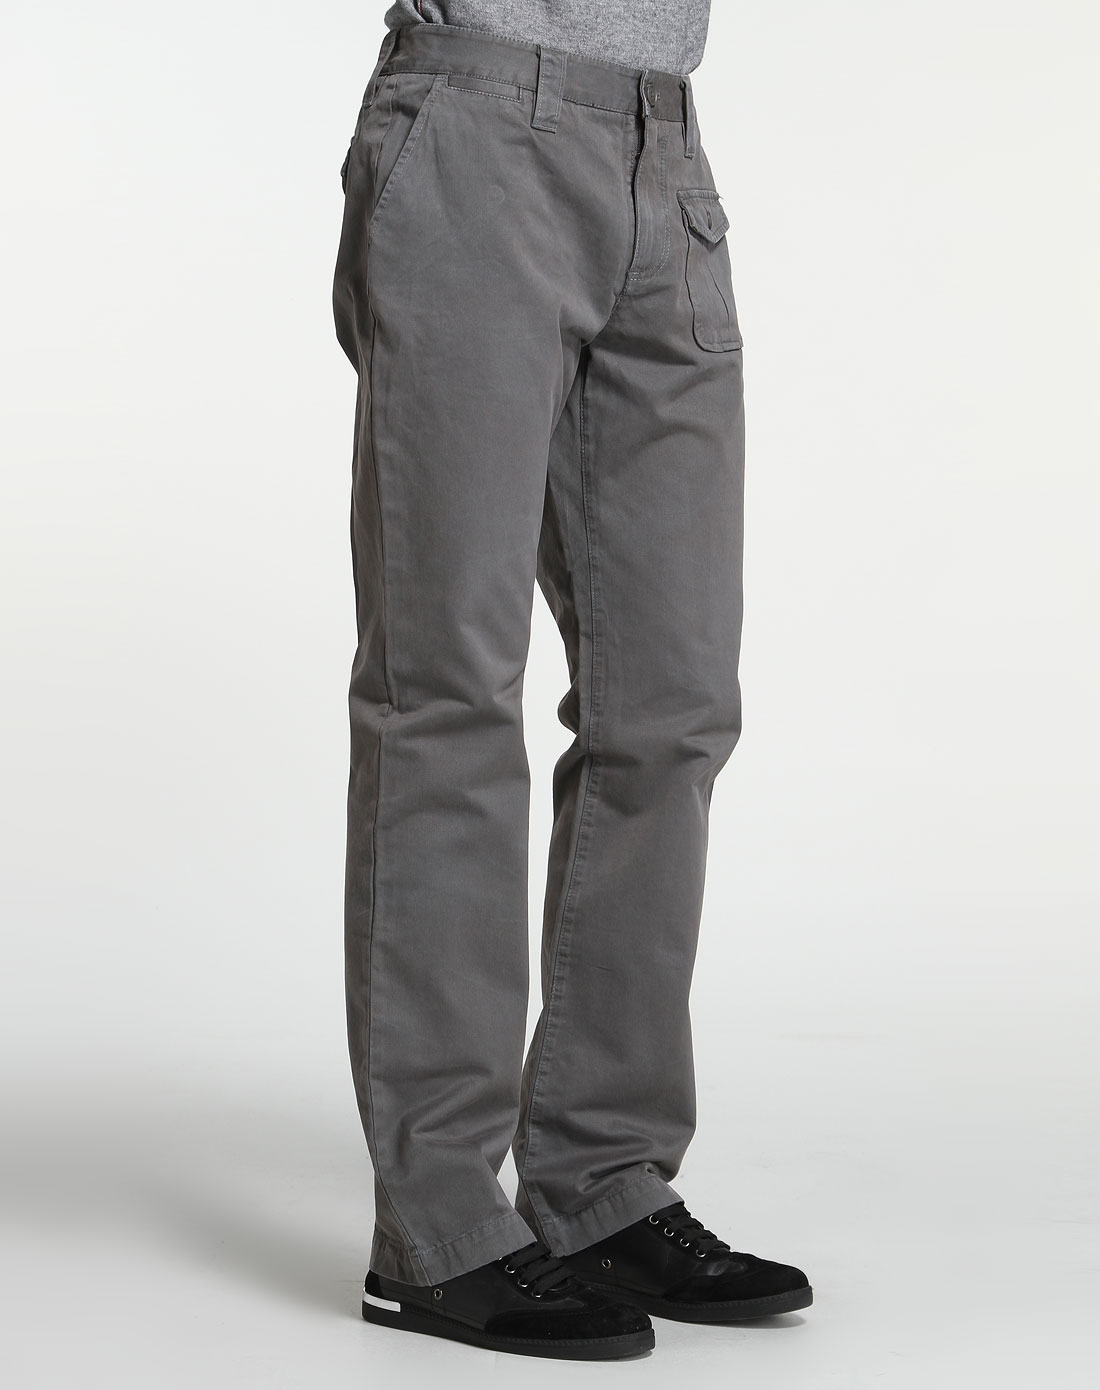 修身小脚裤潮流休闲烟灰色男士价格质量 哪个牌子比较